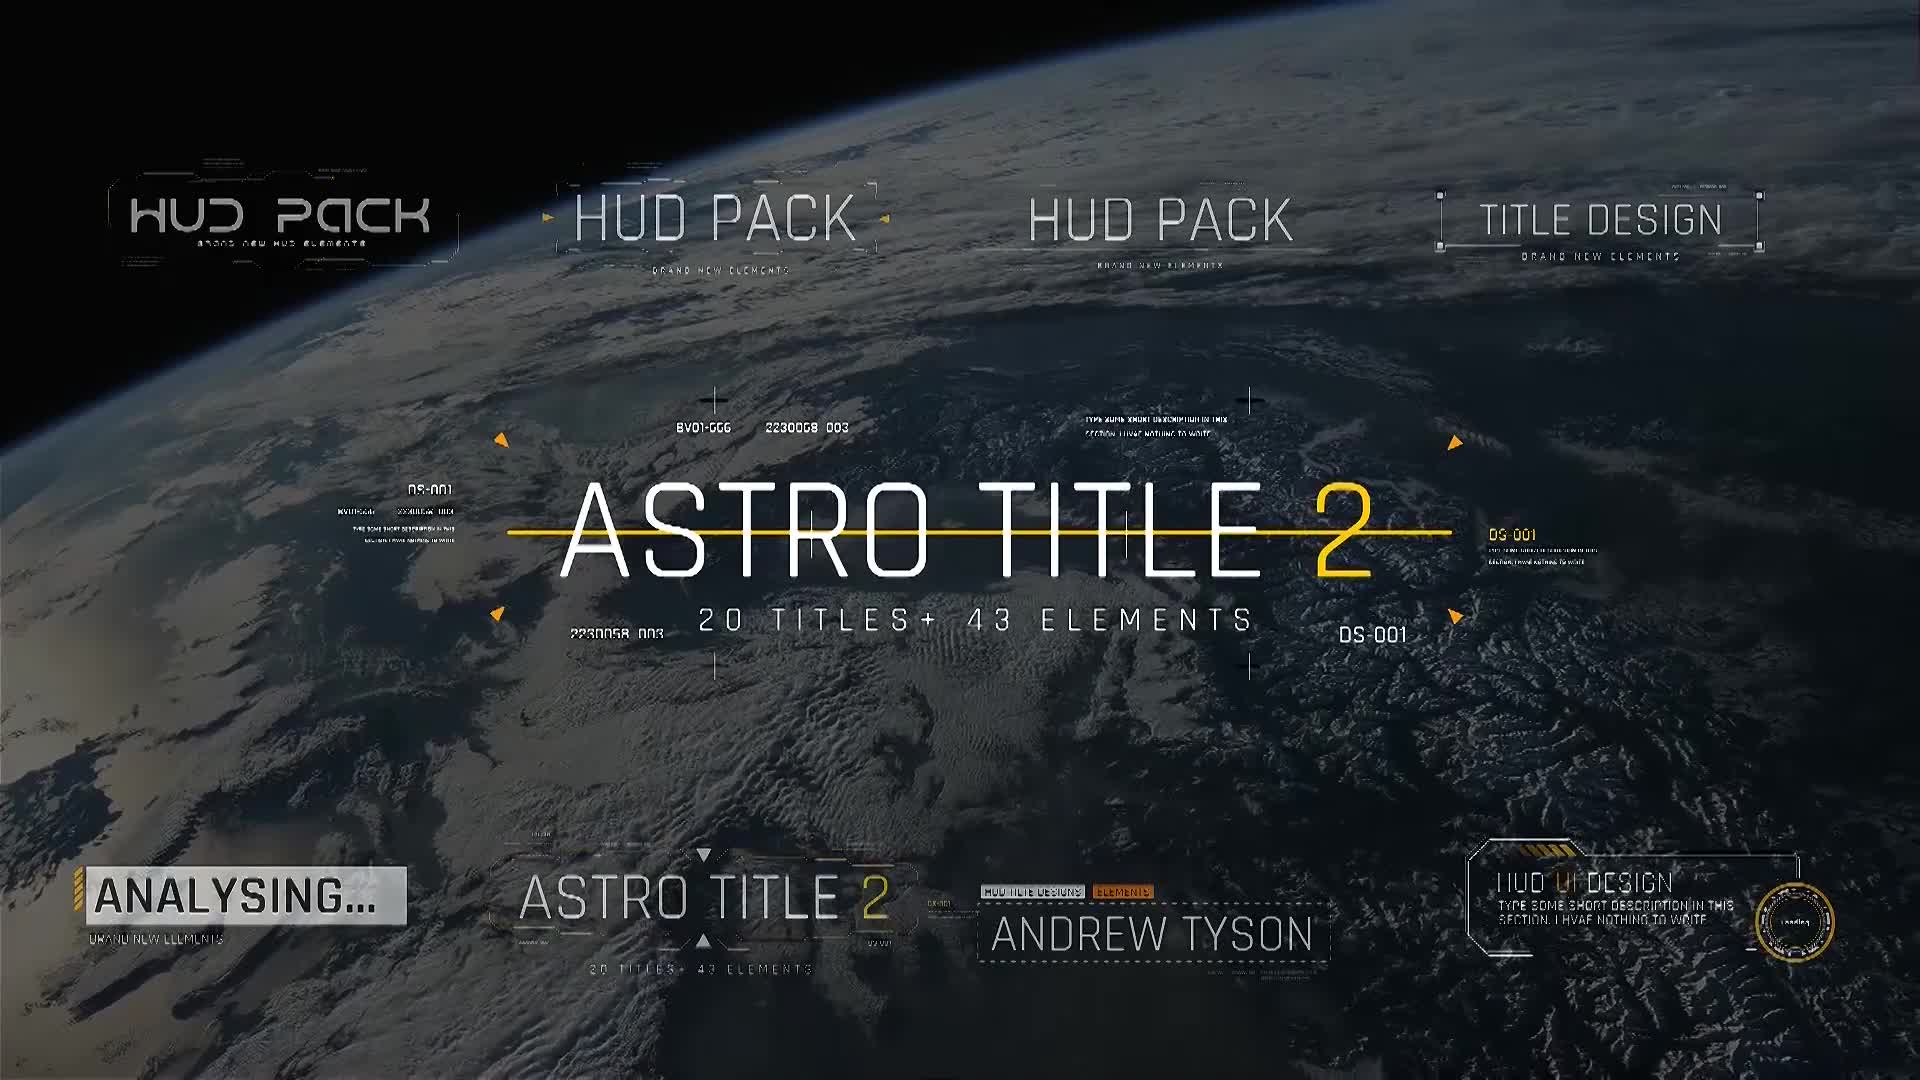 Astro Title 2 Videohive 27881003 Premiere Pro Image 1